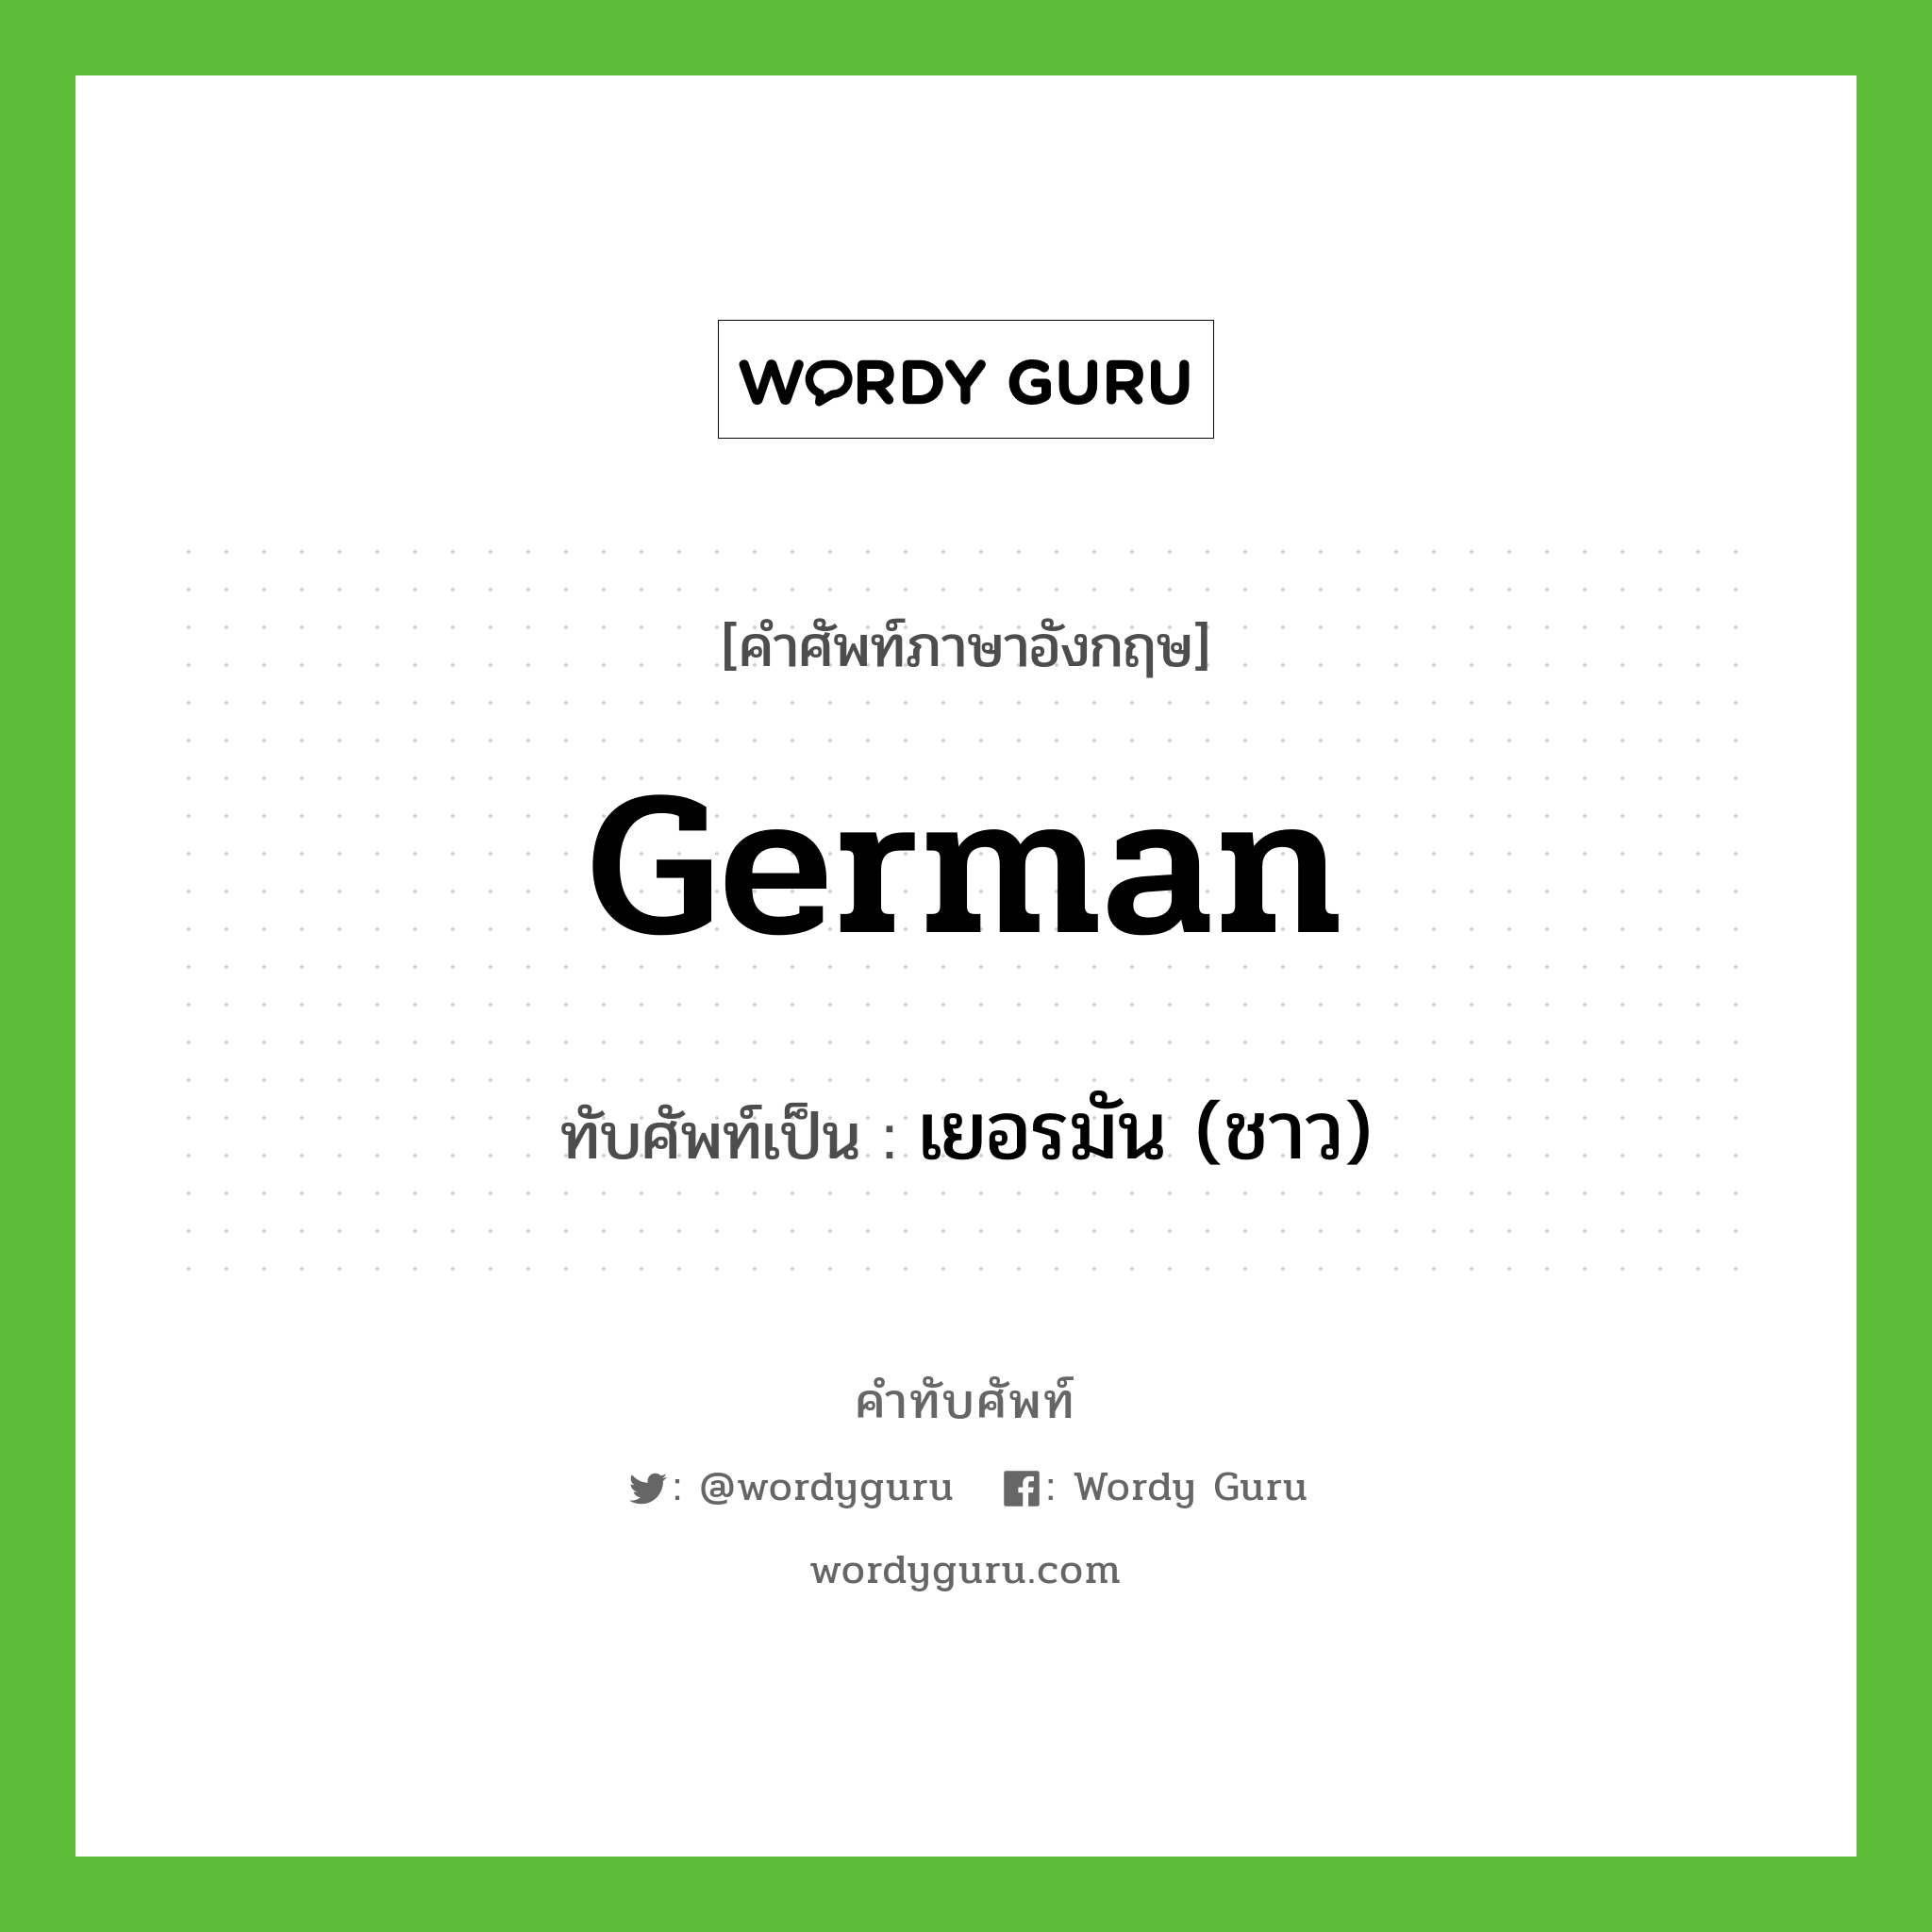 German เขียนเป็นคำไทยว่าอะไร?, คำศัพท์ภาษาอังกฤษ German ทับศัพท์เป็น เยอรมัน (ชาว)